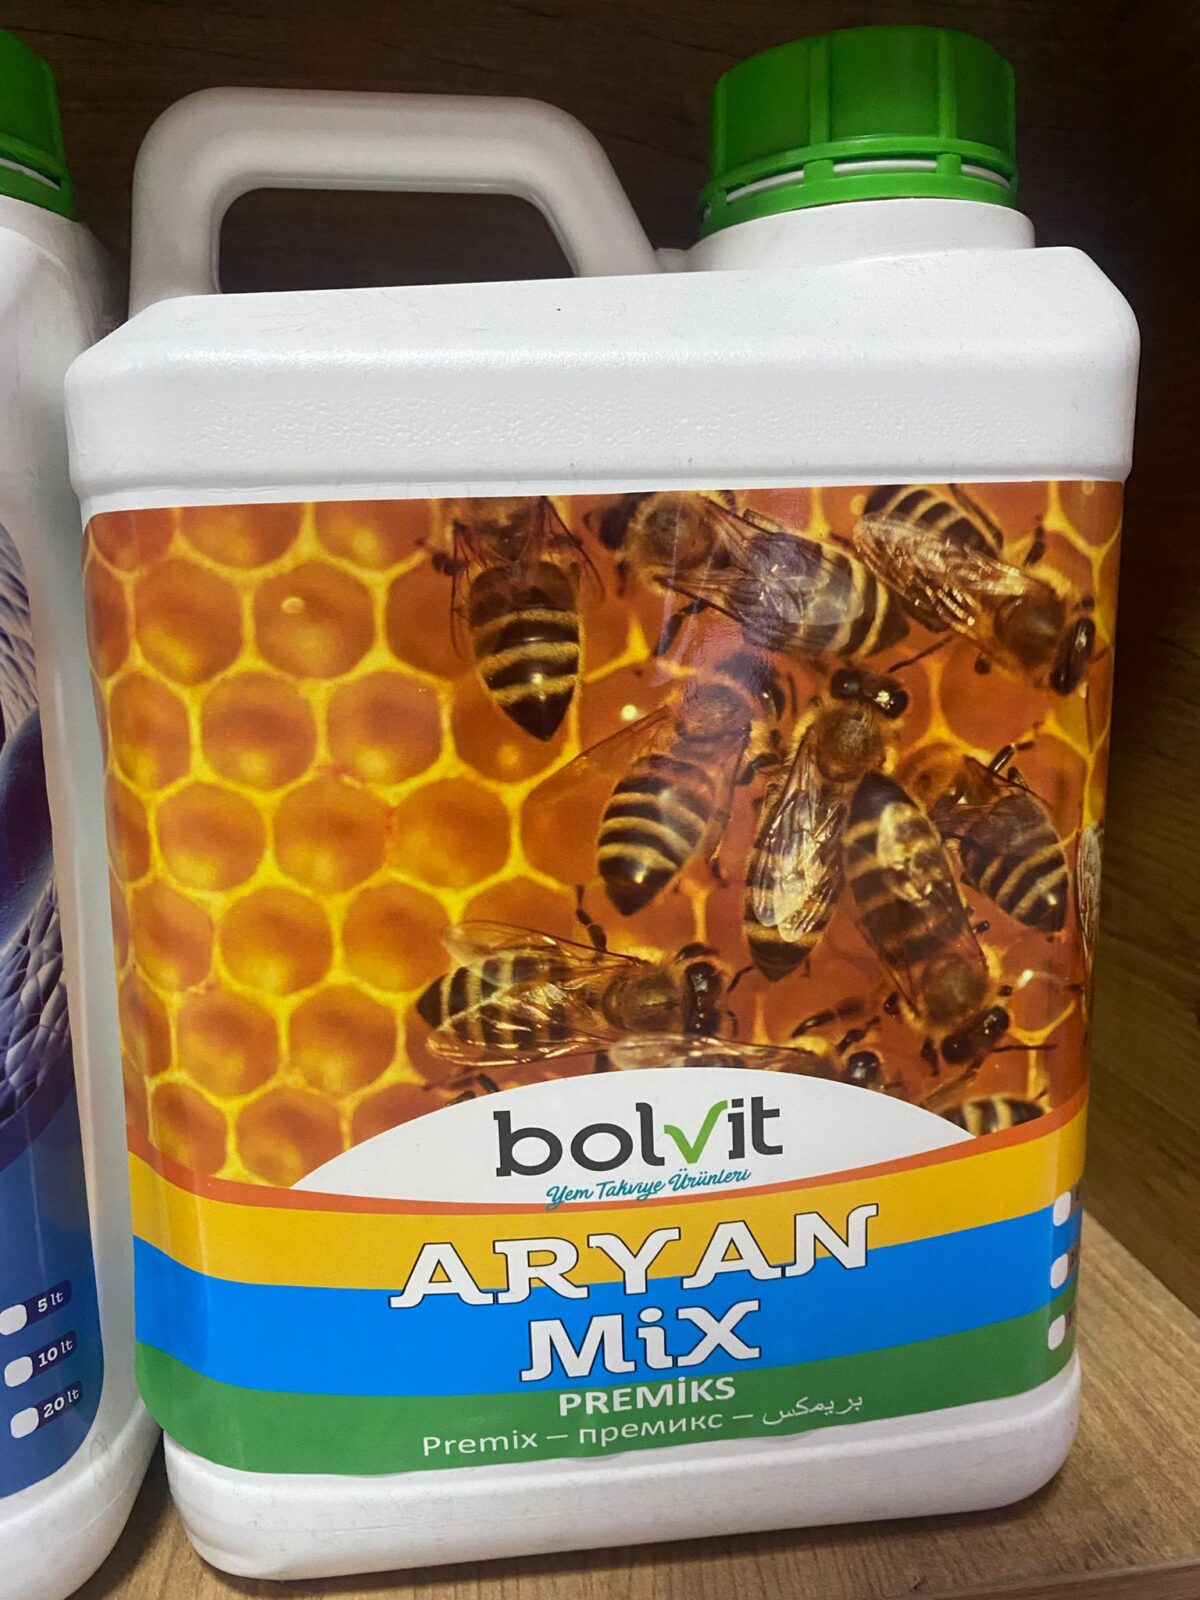 bolvit aryan mix 5 litre 2